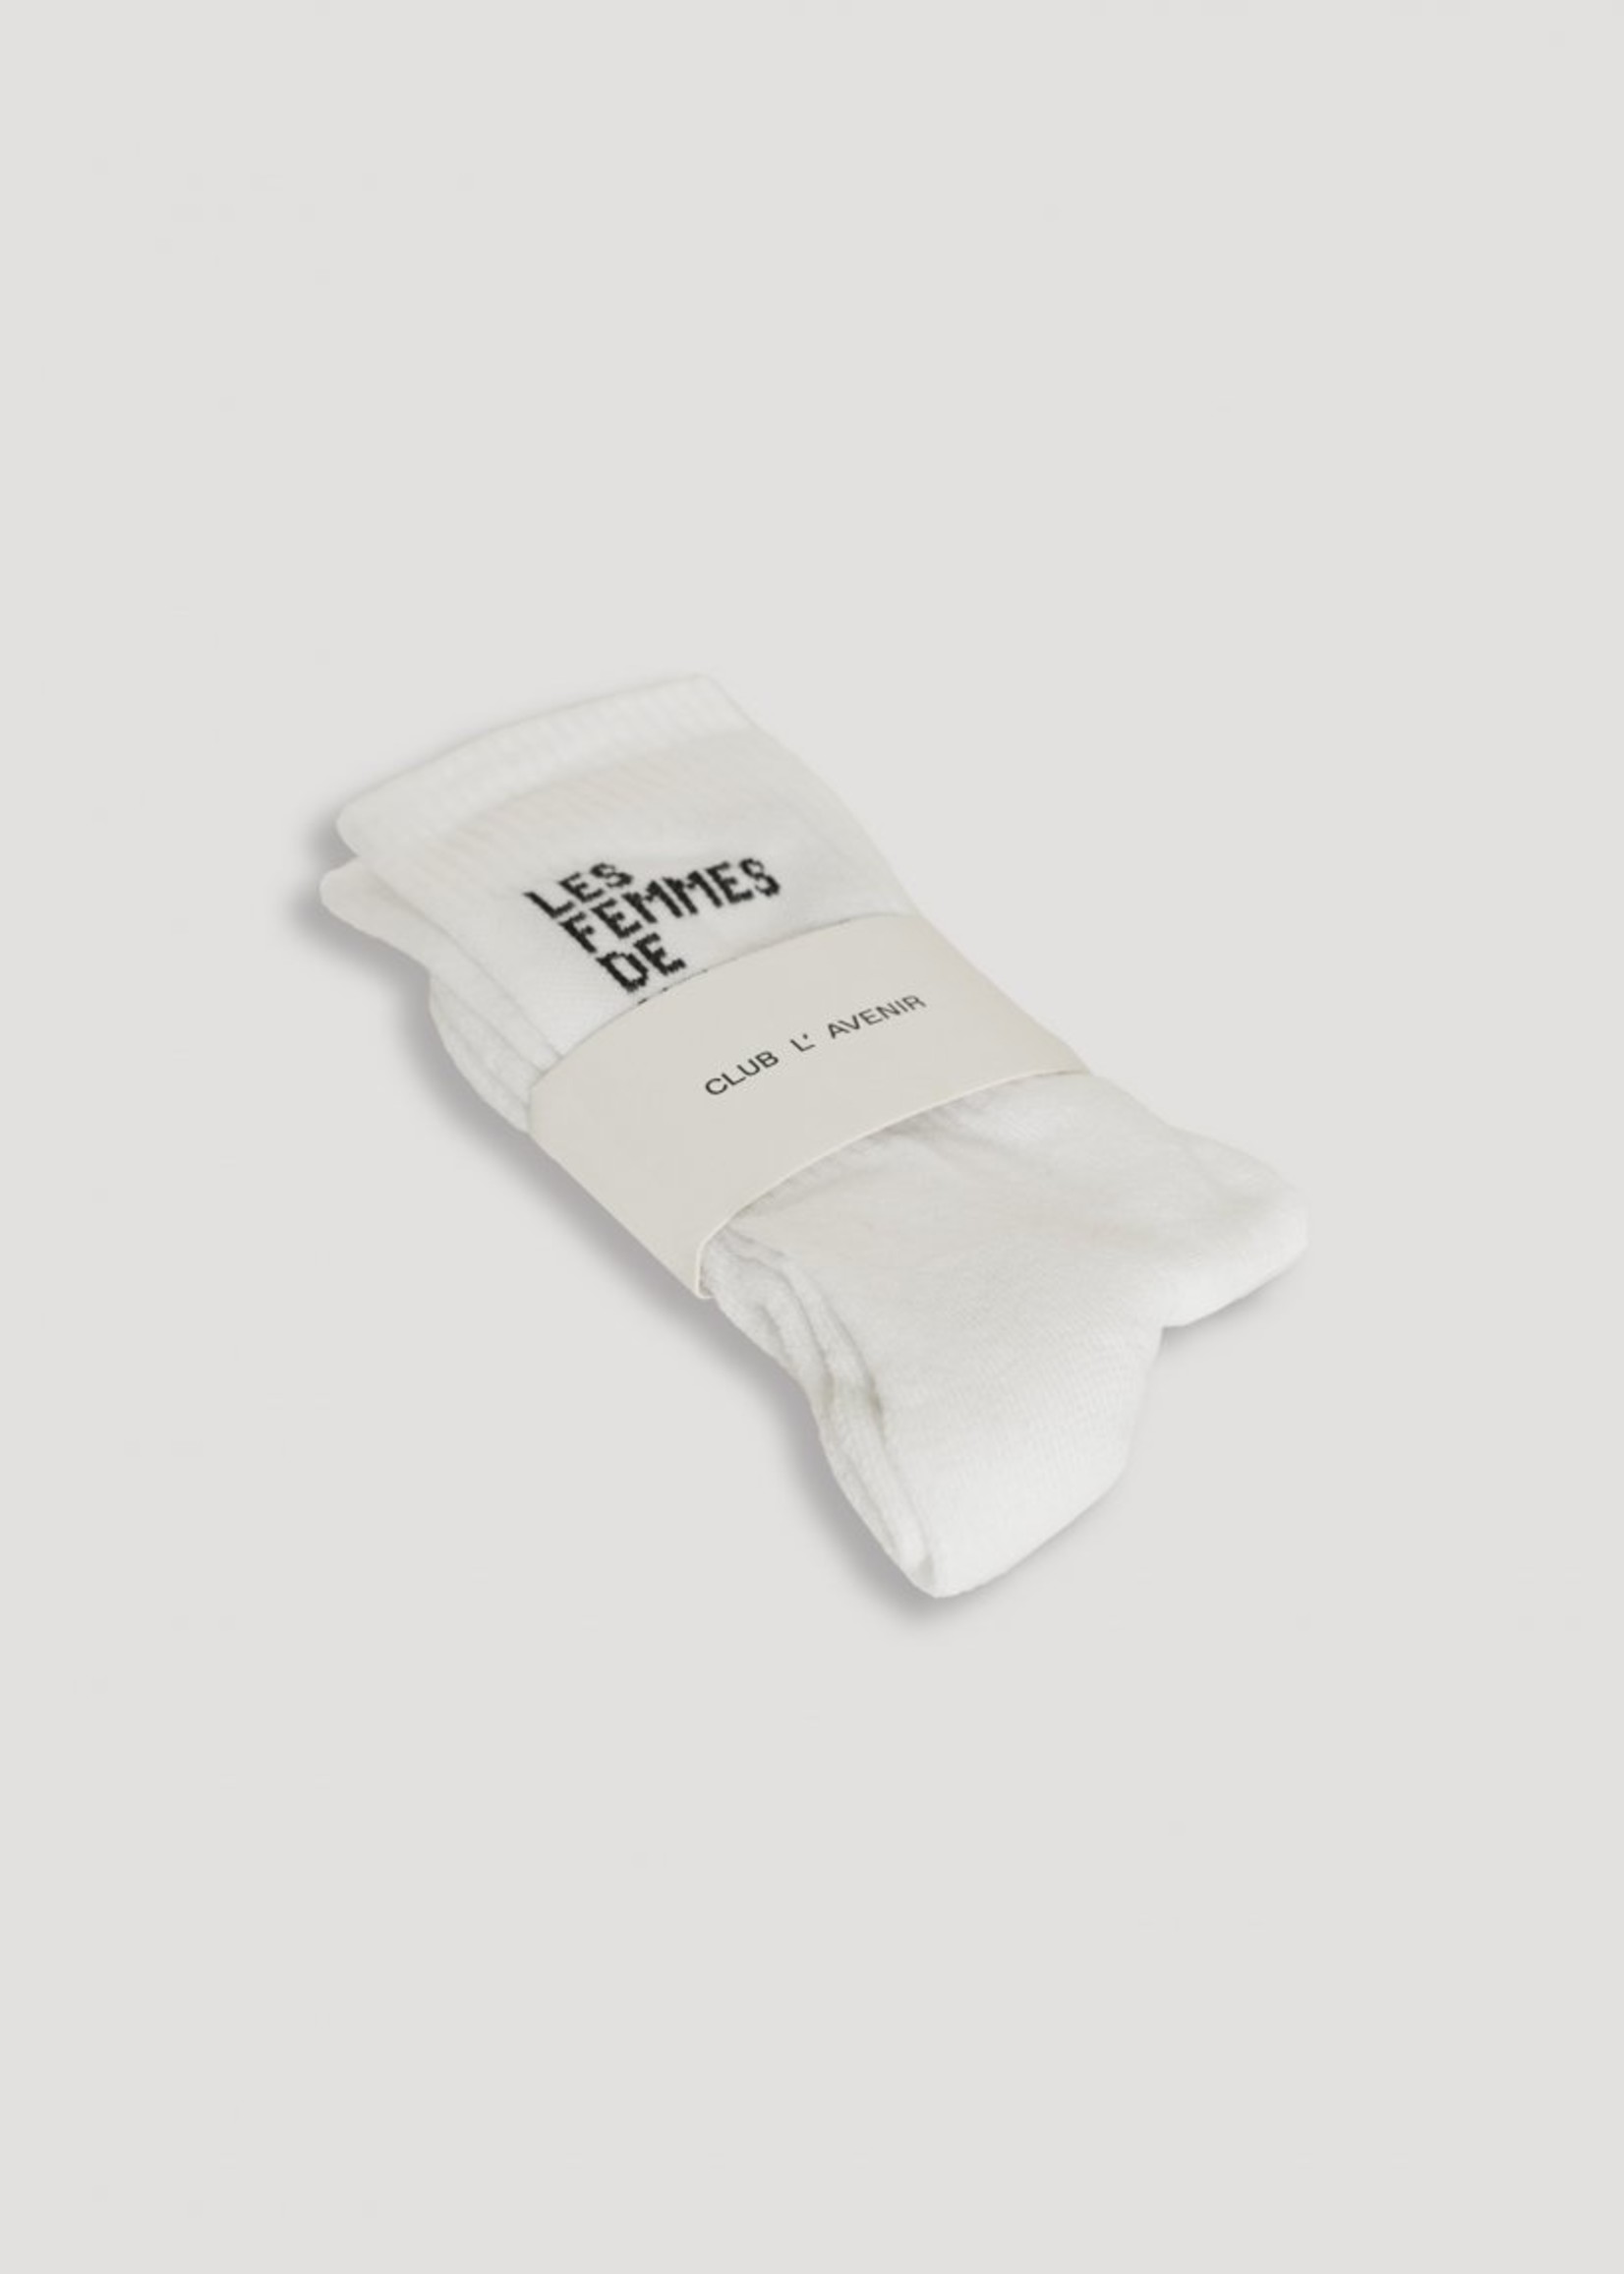 Club L'avenir Yin yang socks - white